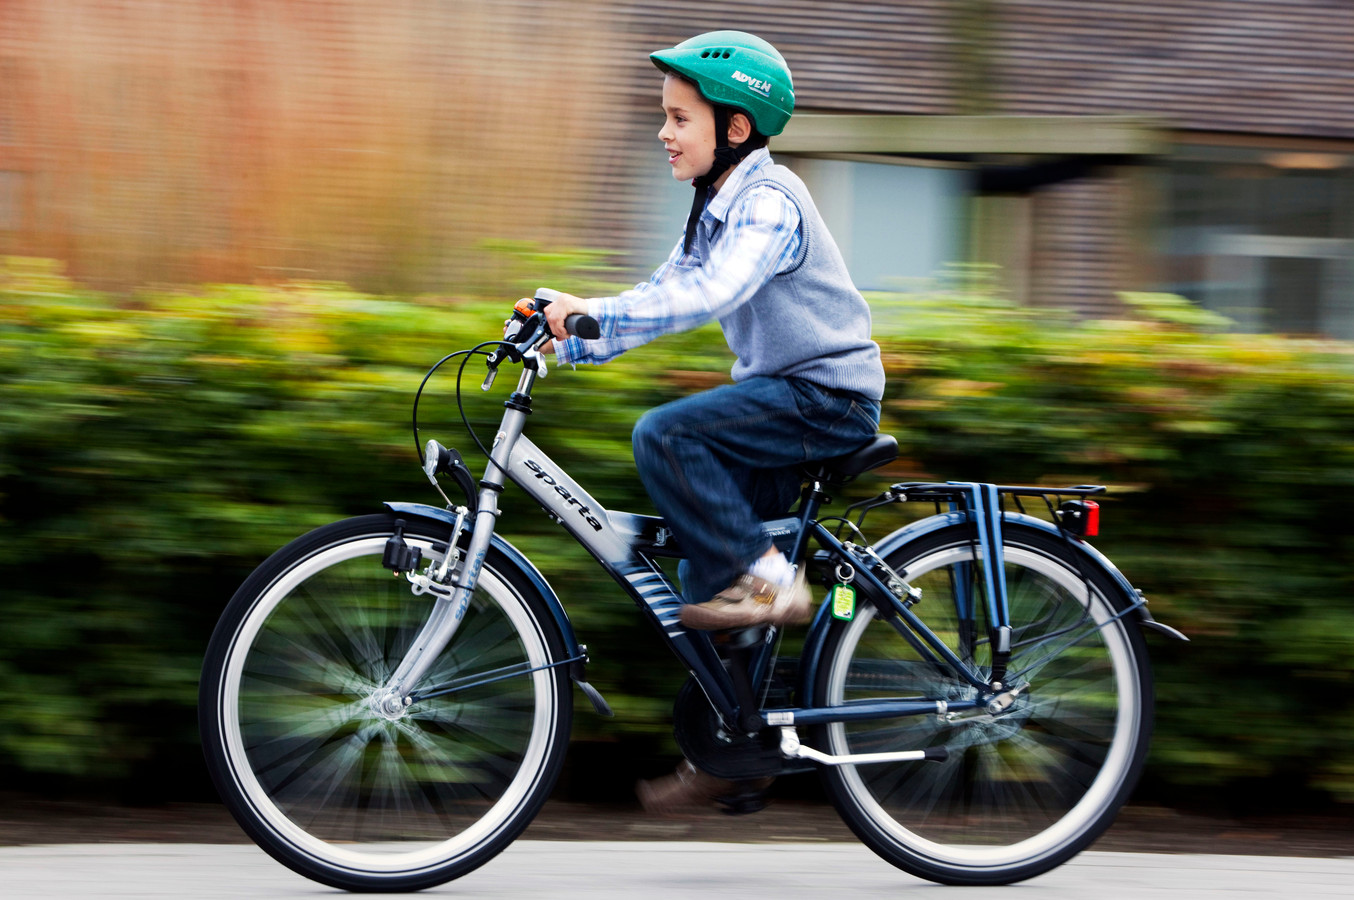 Als kinderen en jongeren verplicht een helm op de fiets dragen, kunnen een heleboel ongelukken worden voorkomen.